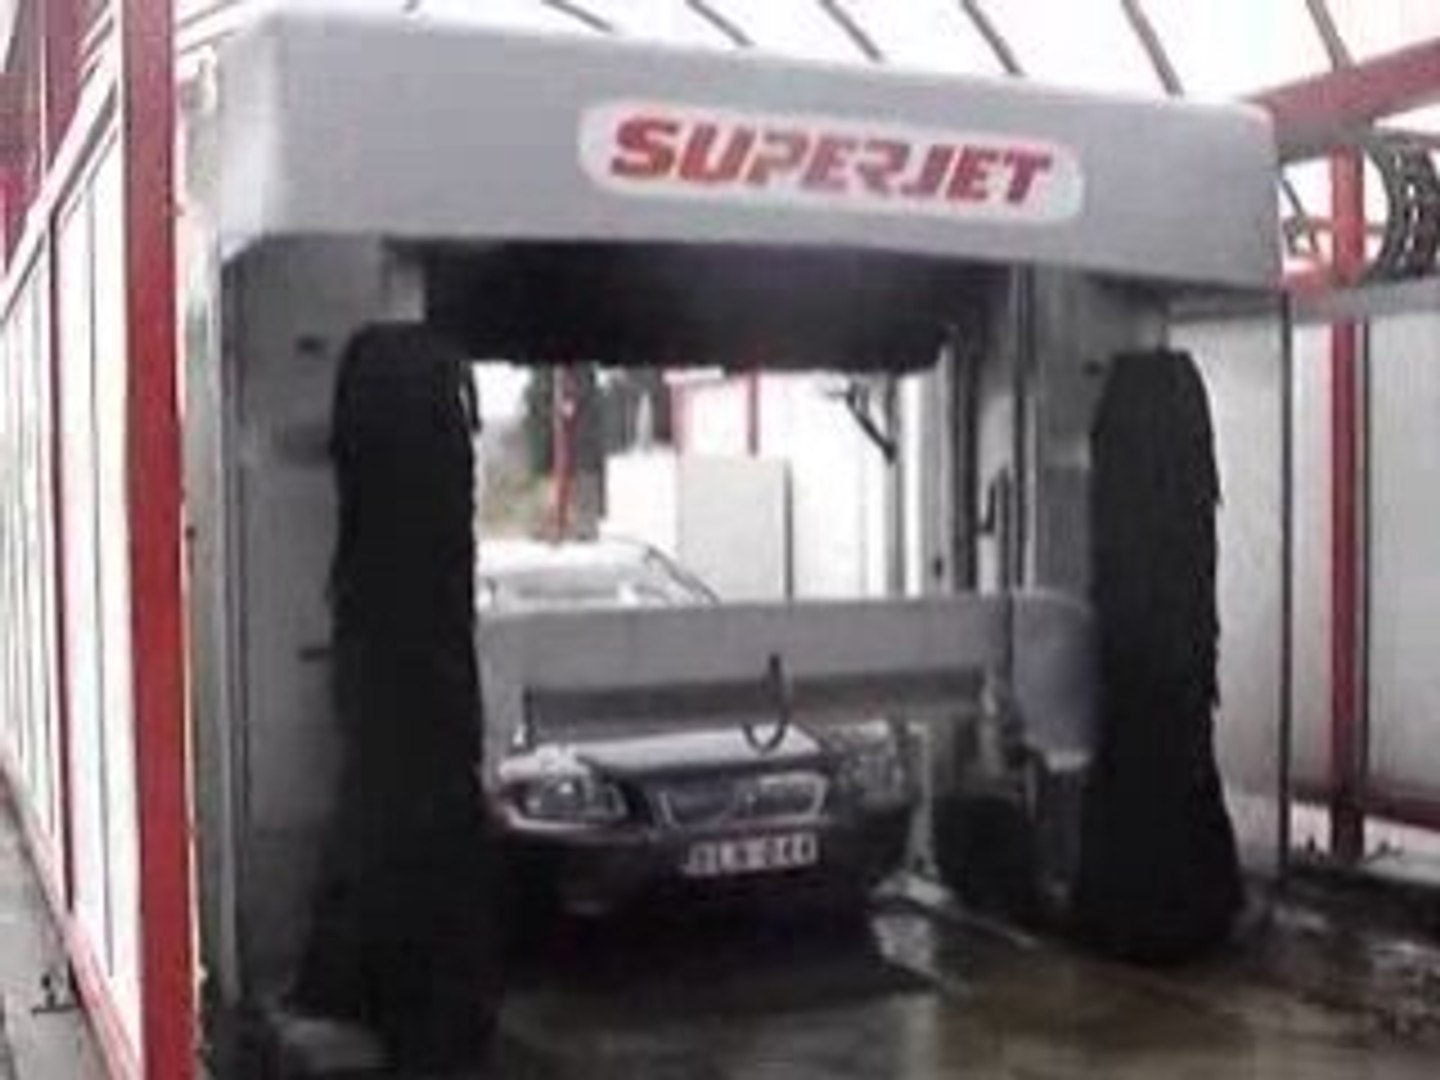 Lavage automatique à Superjet - Vidéo Dailymotion